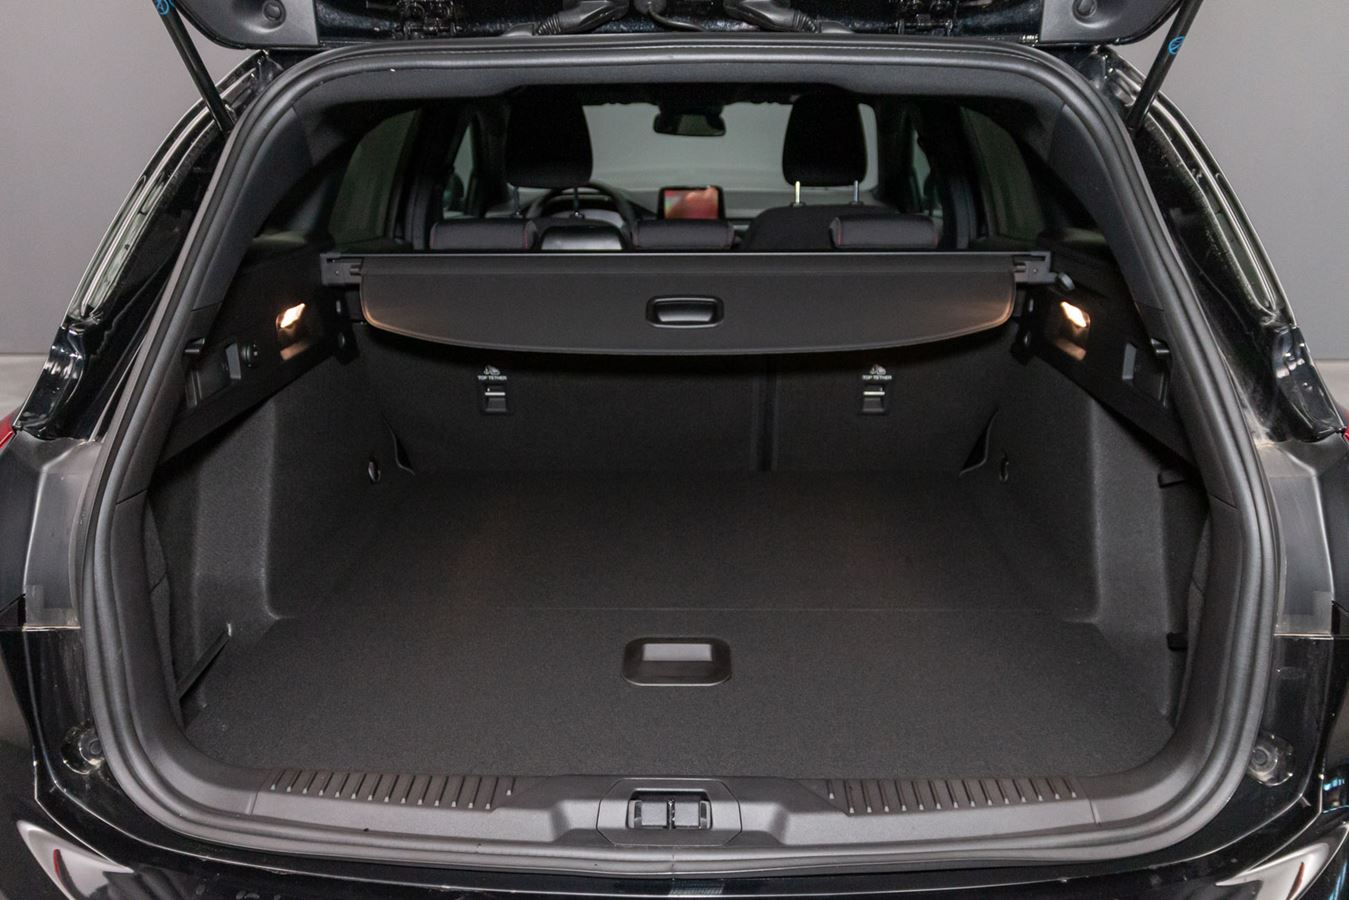 Ford Focus, dimensioni e bagagliaio della compatta dell'Ovale